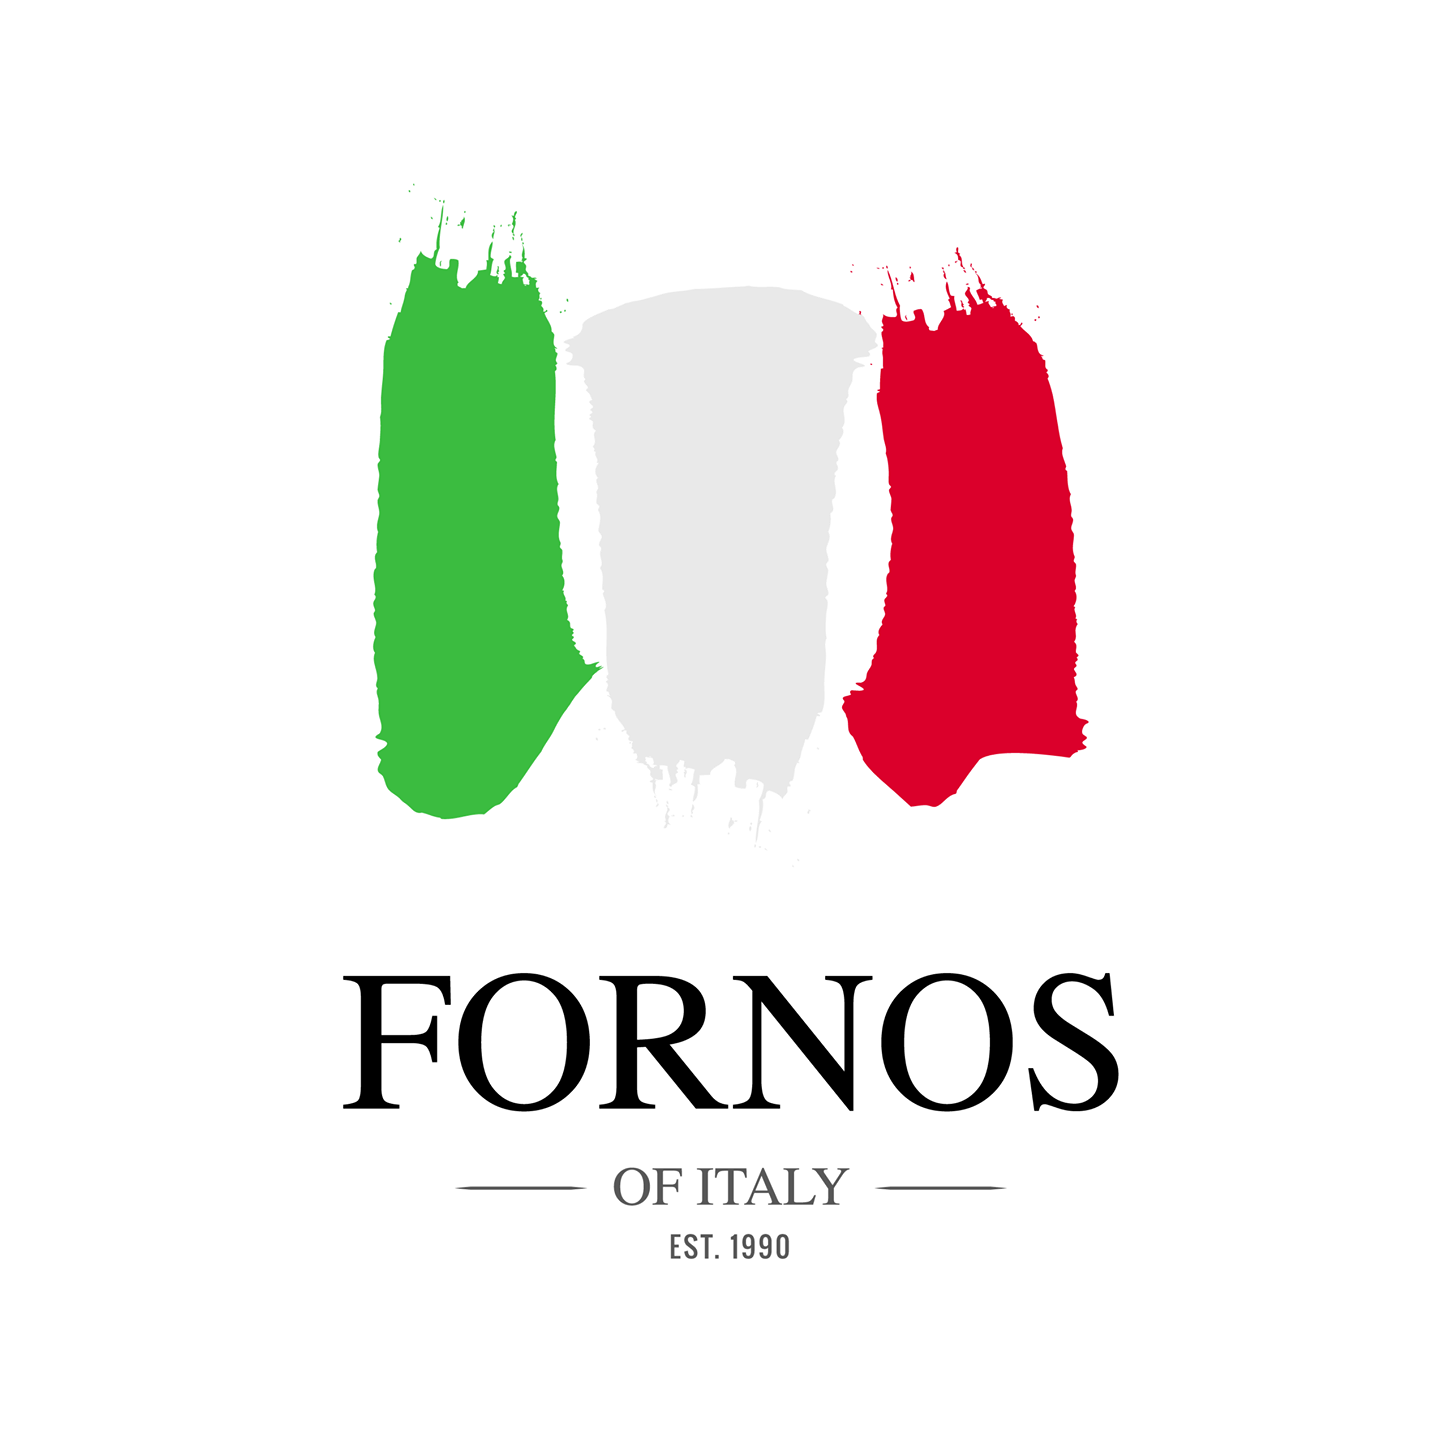 Fornos Logo